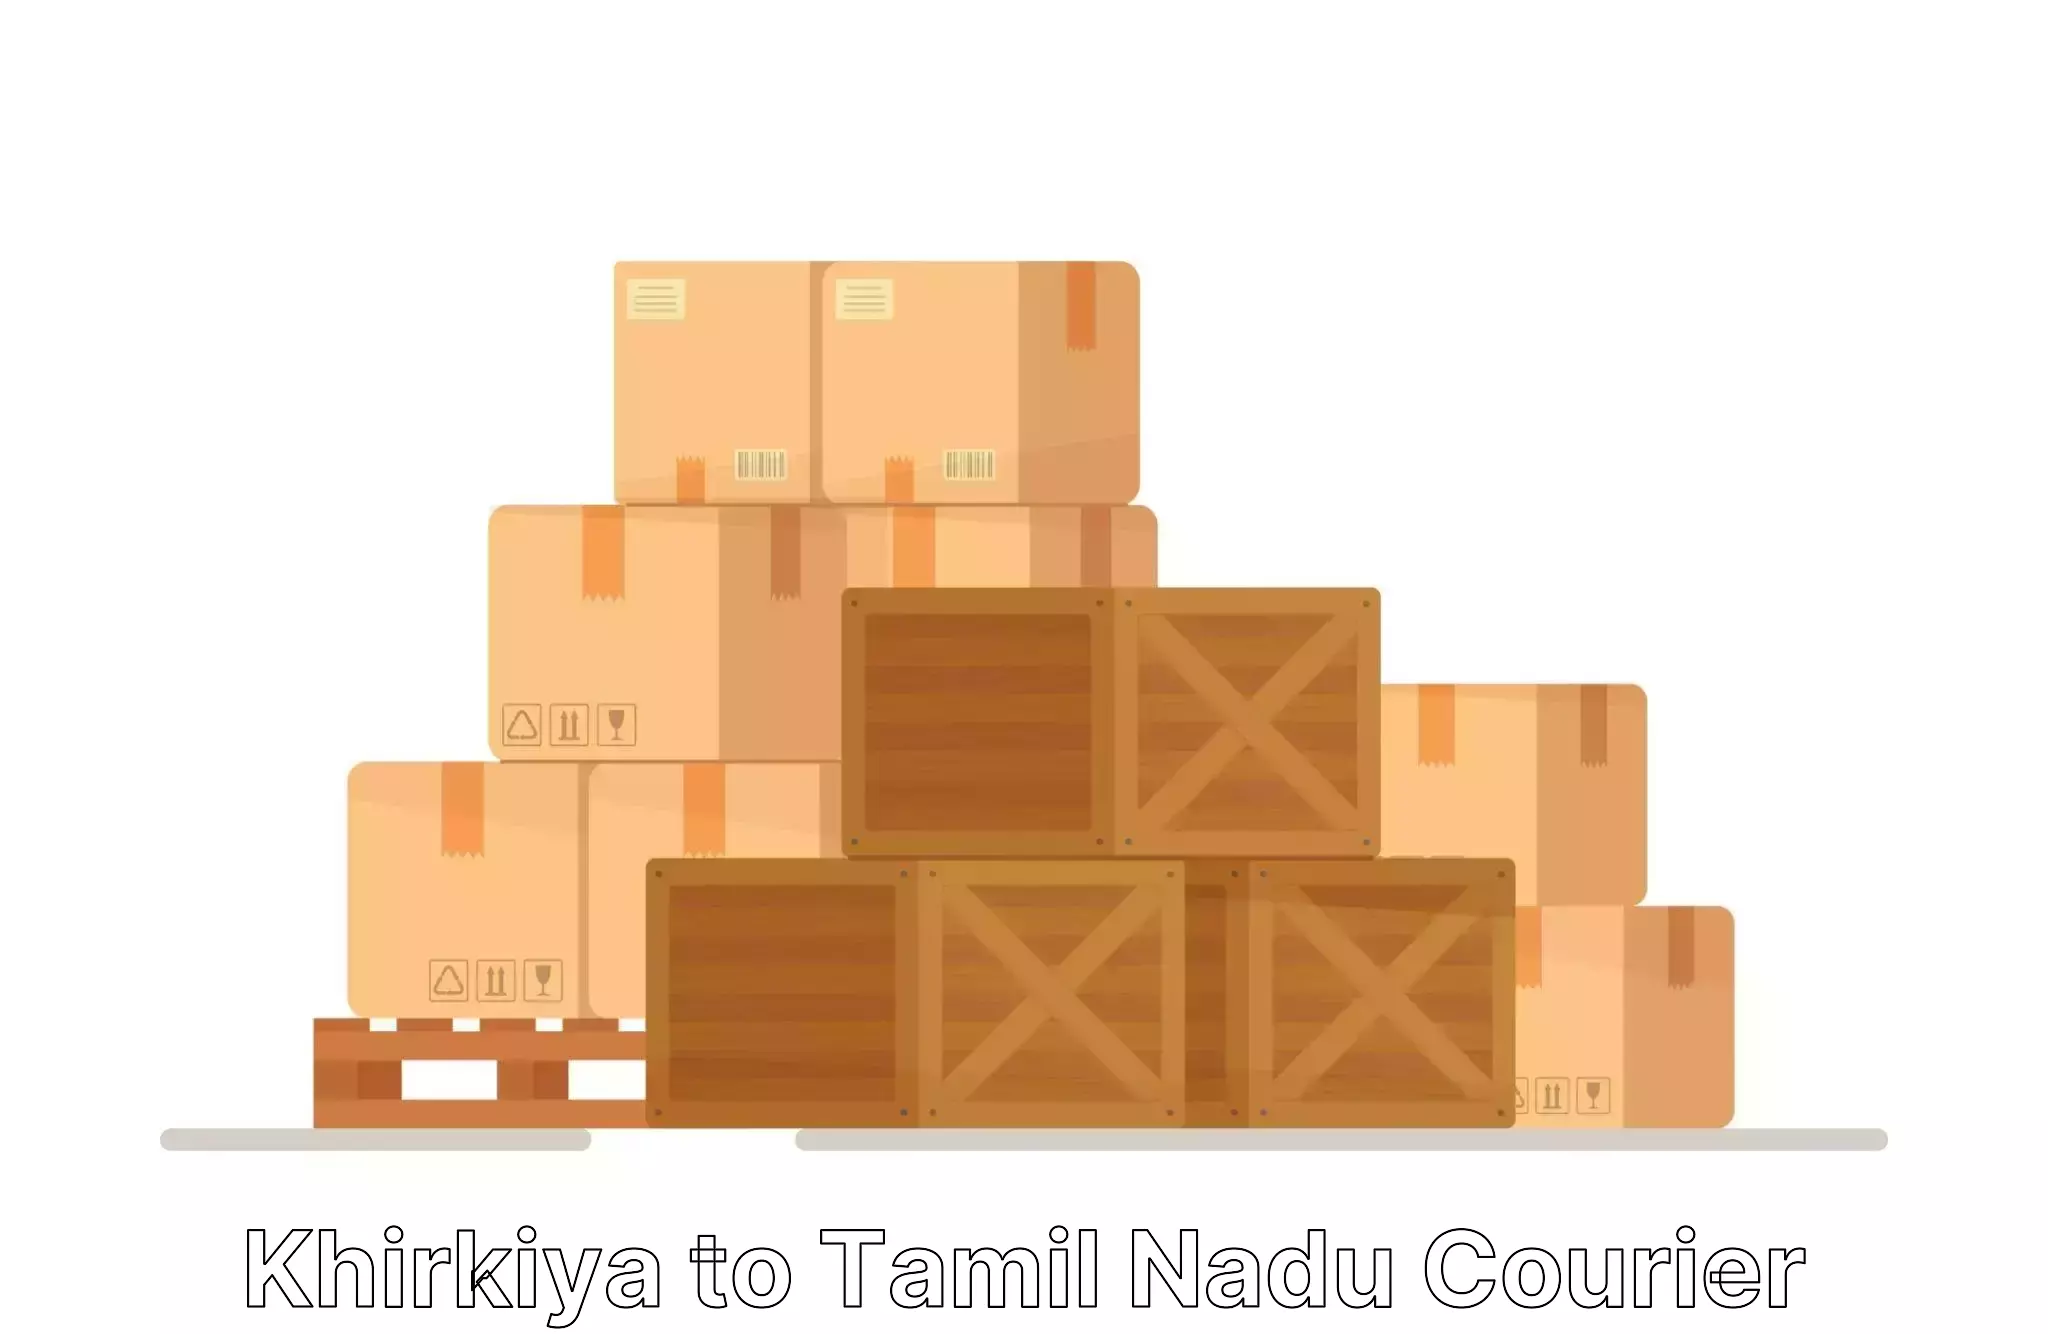 Local household moving Khirkiya to Tamil Nadu